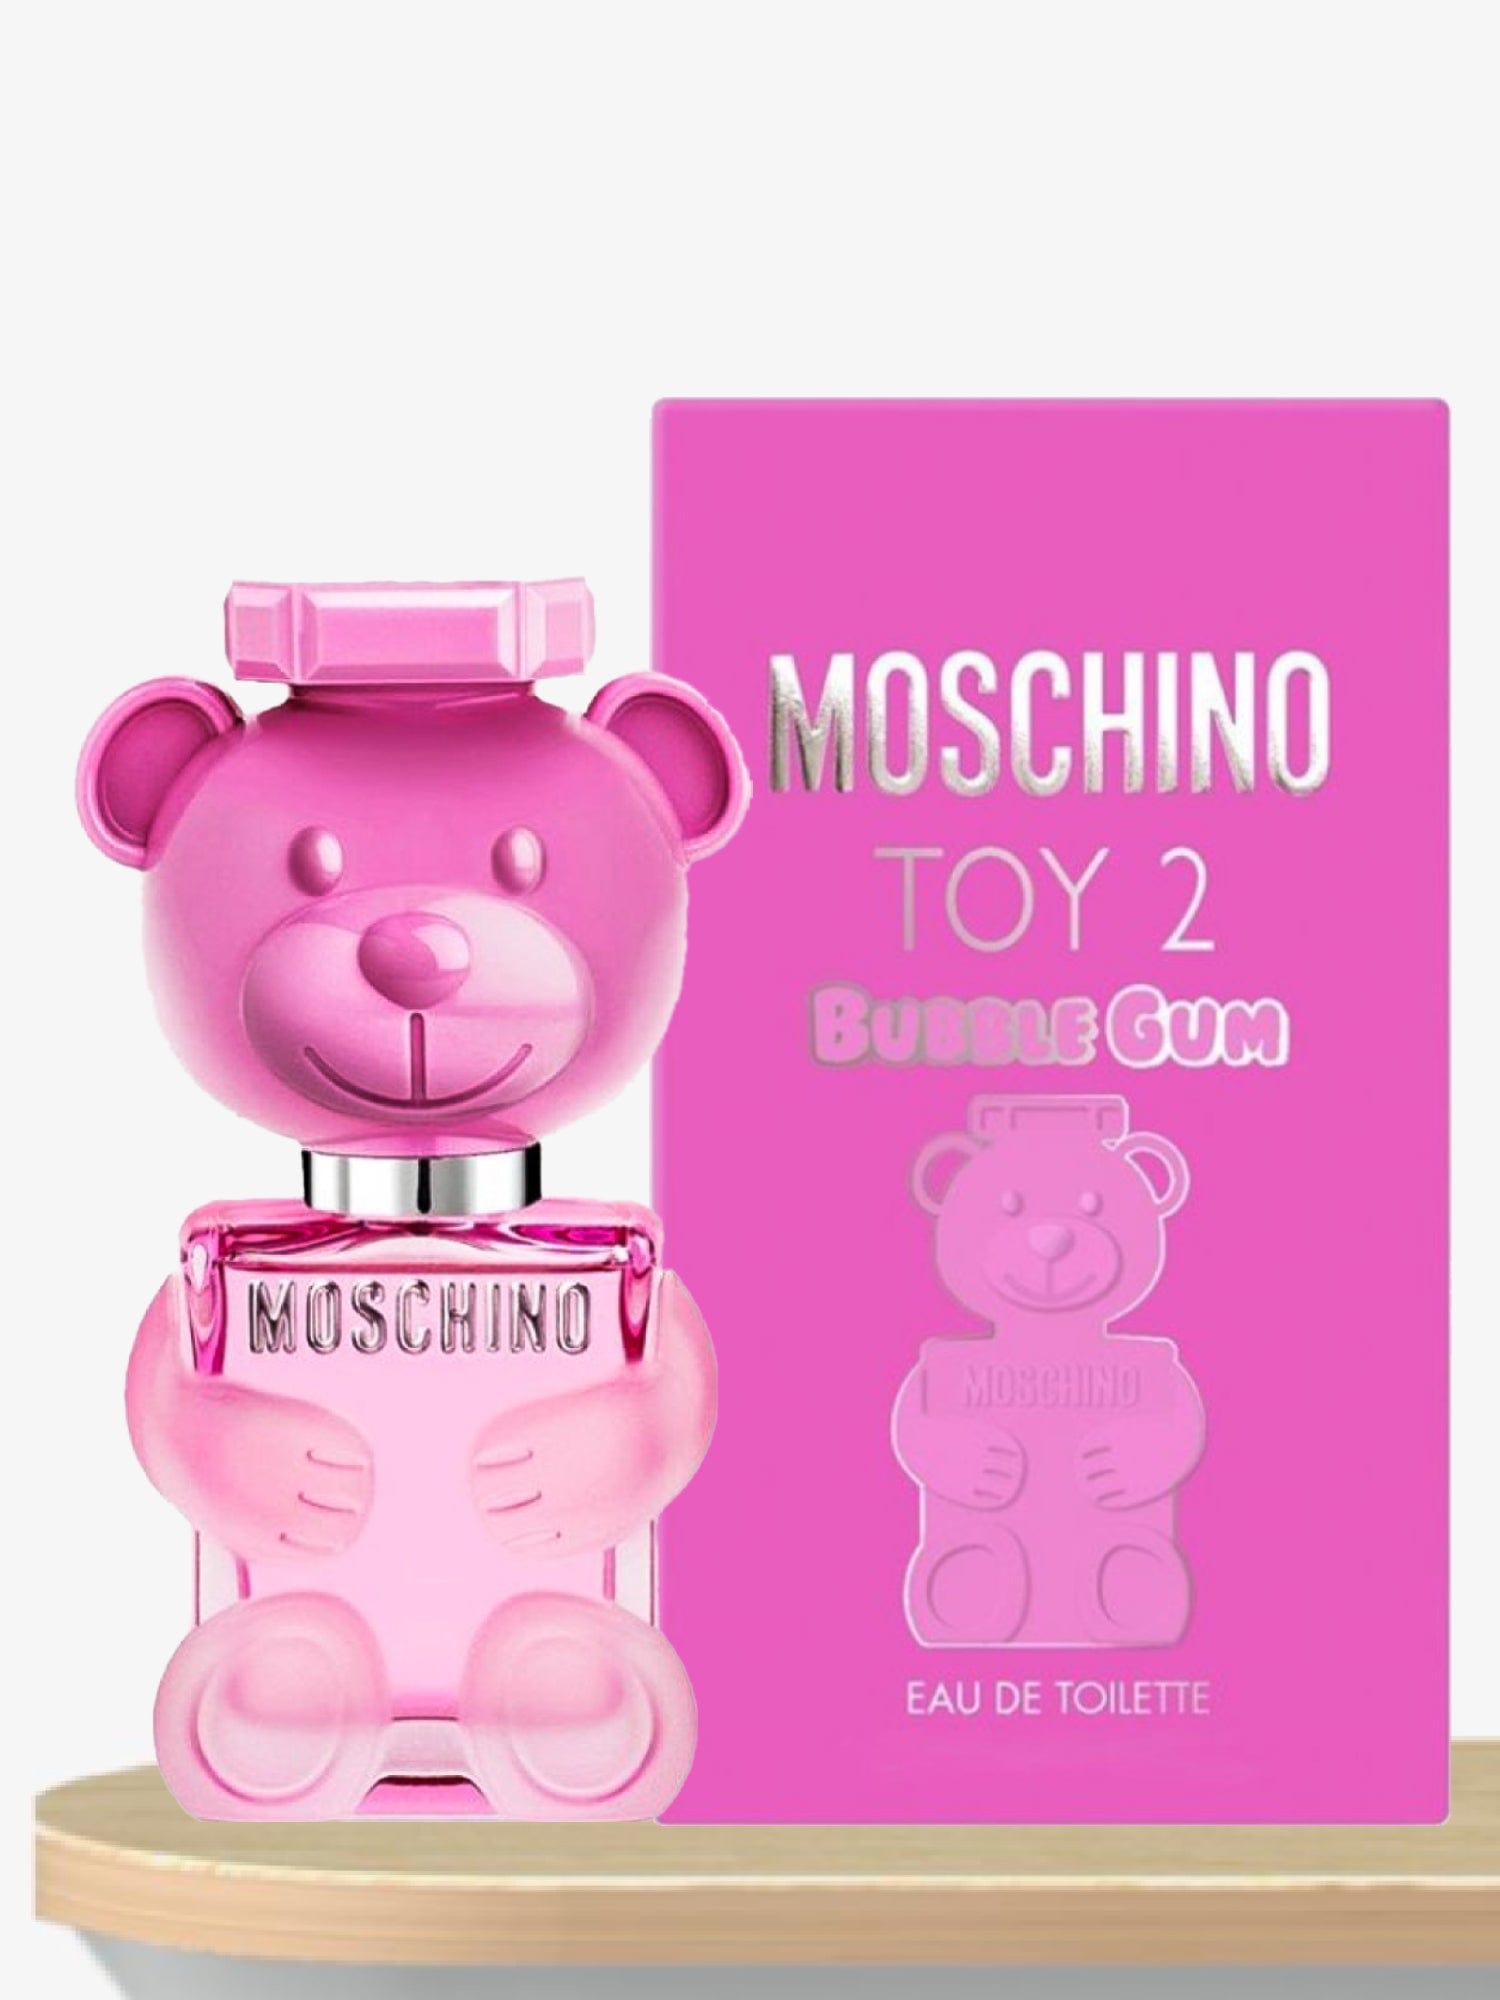 Moschino Toy 2 Bubble Gum Eau de Toilette 100 mL / Female